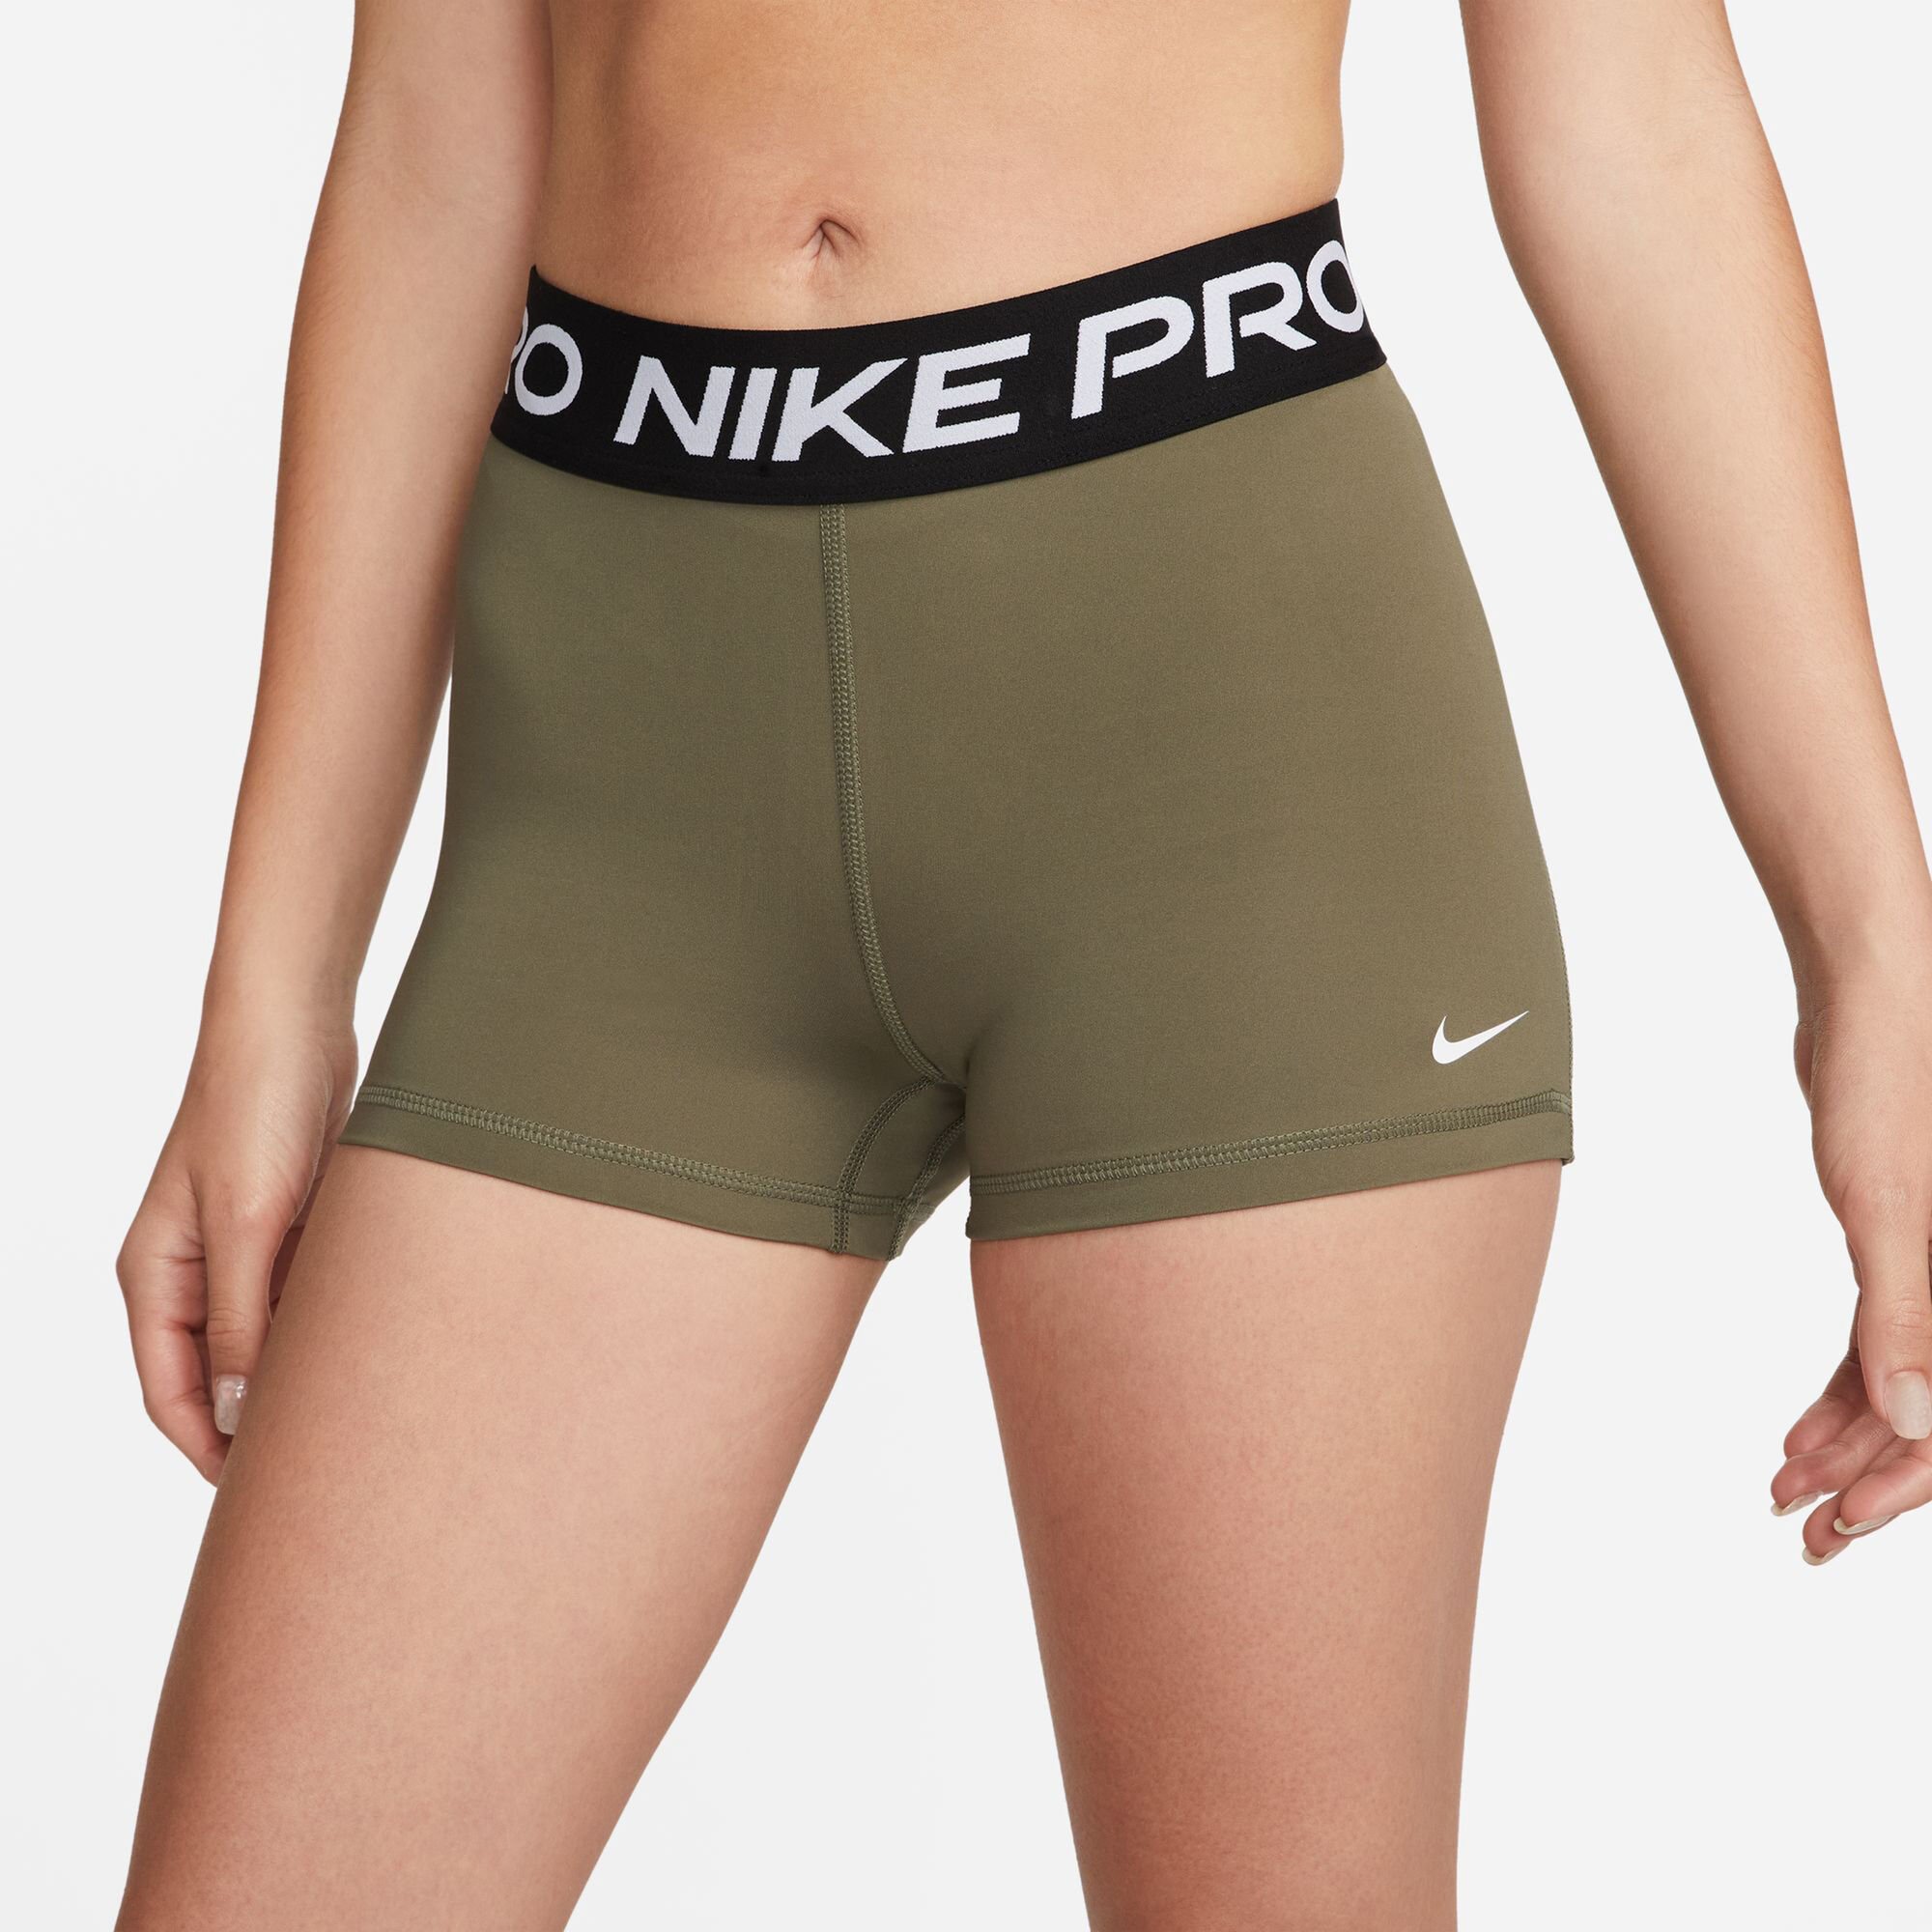 Logisch Onaangenaam Boos worden buy Nike Pro 3in Shorts Women - Olive, Black online | Tennis-Point